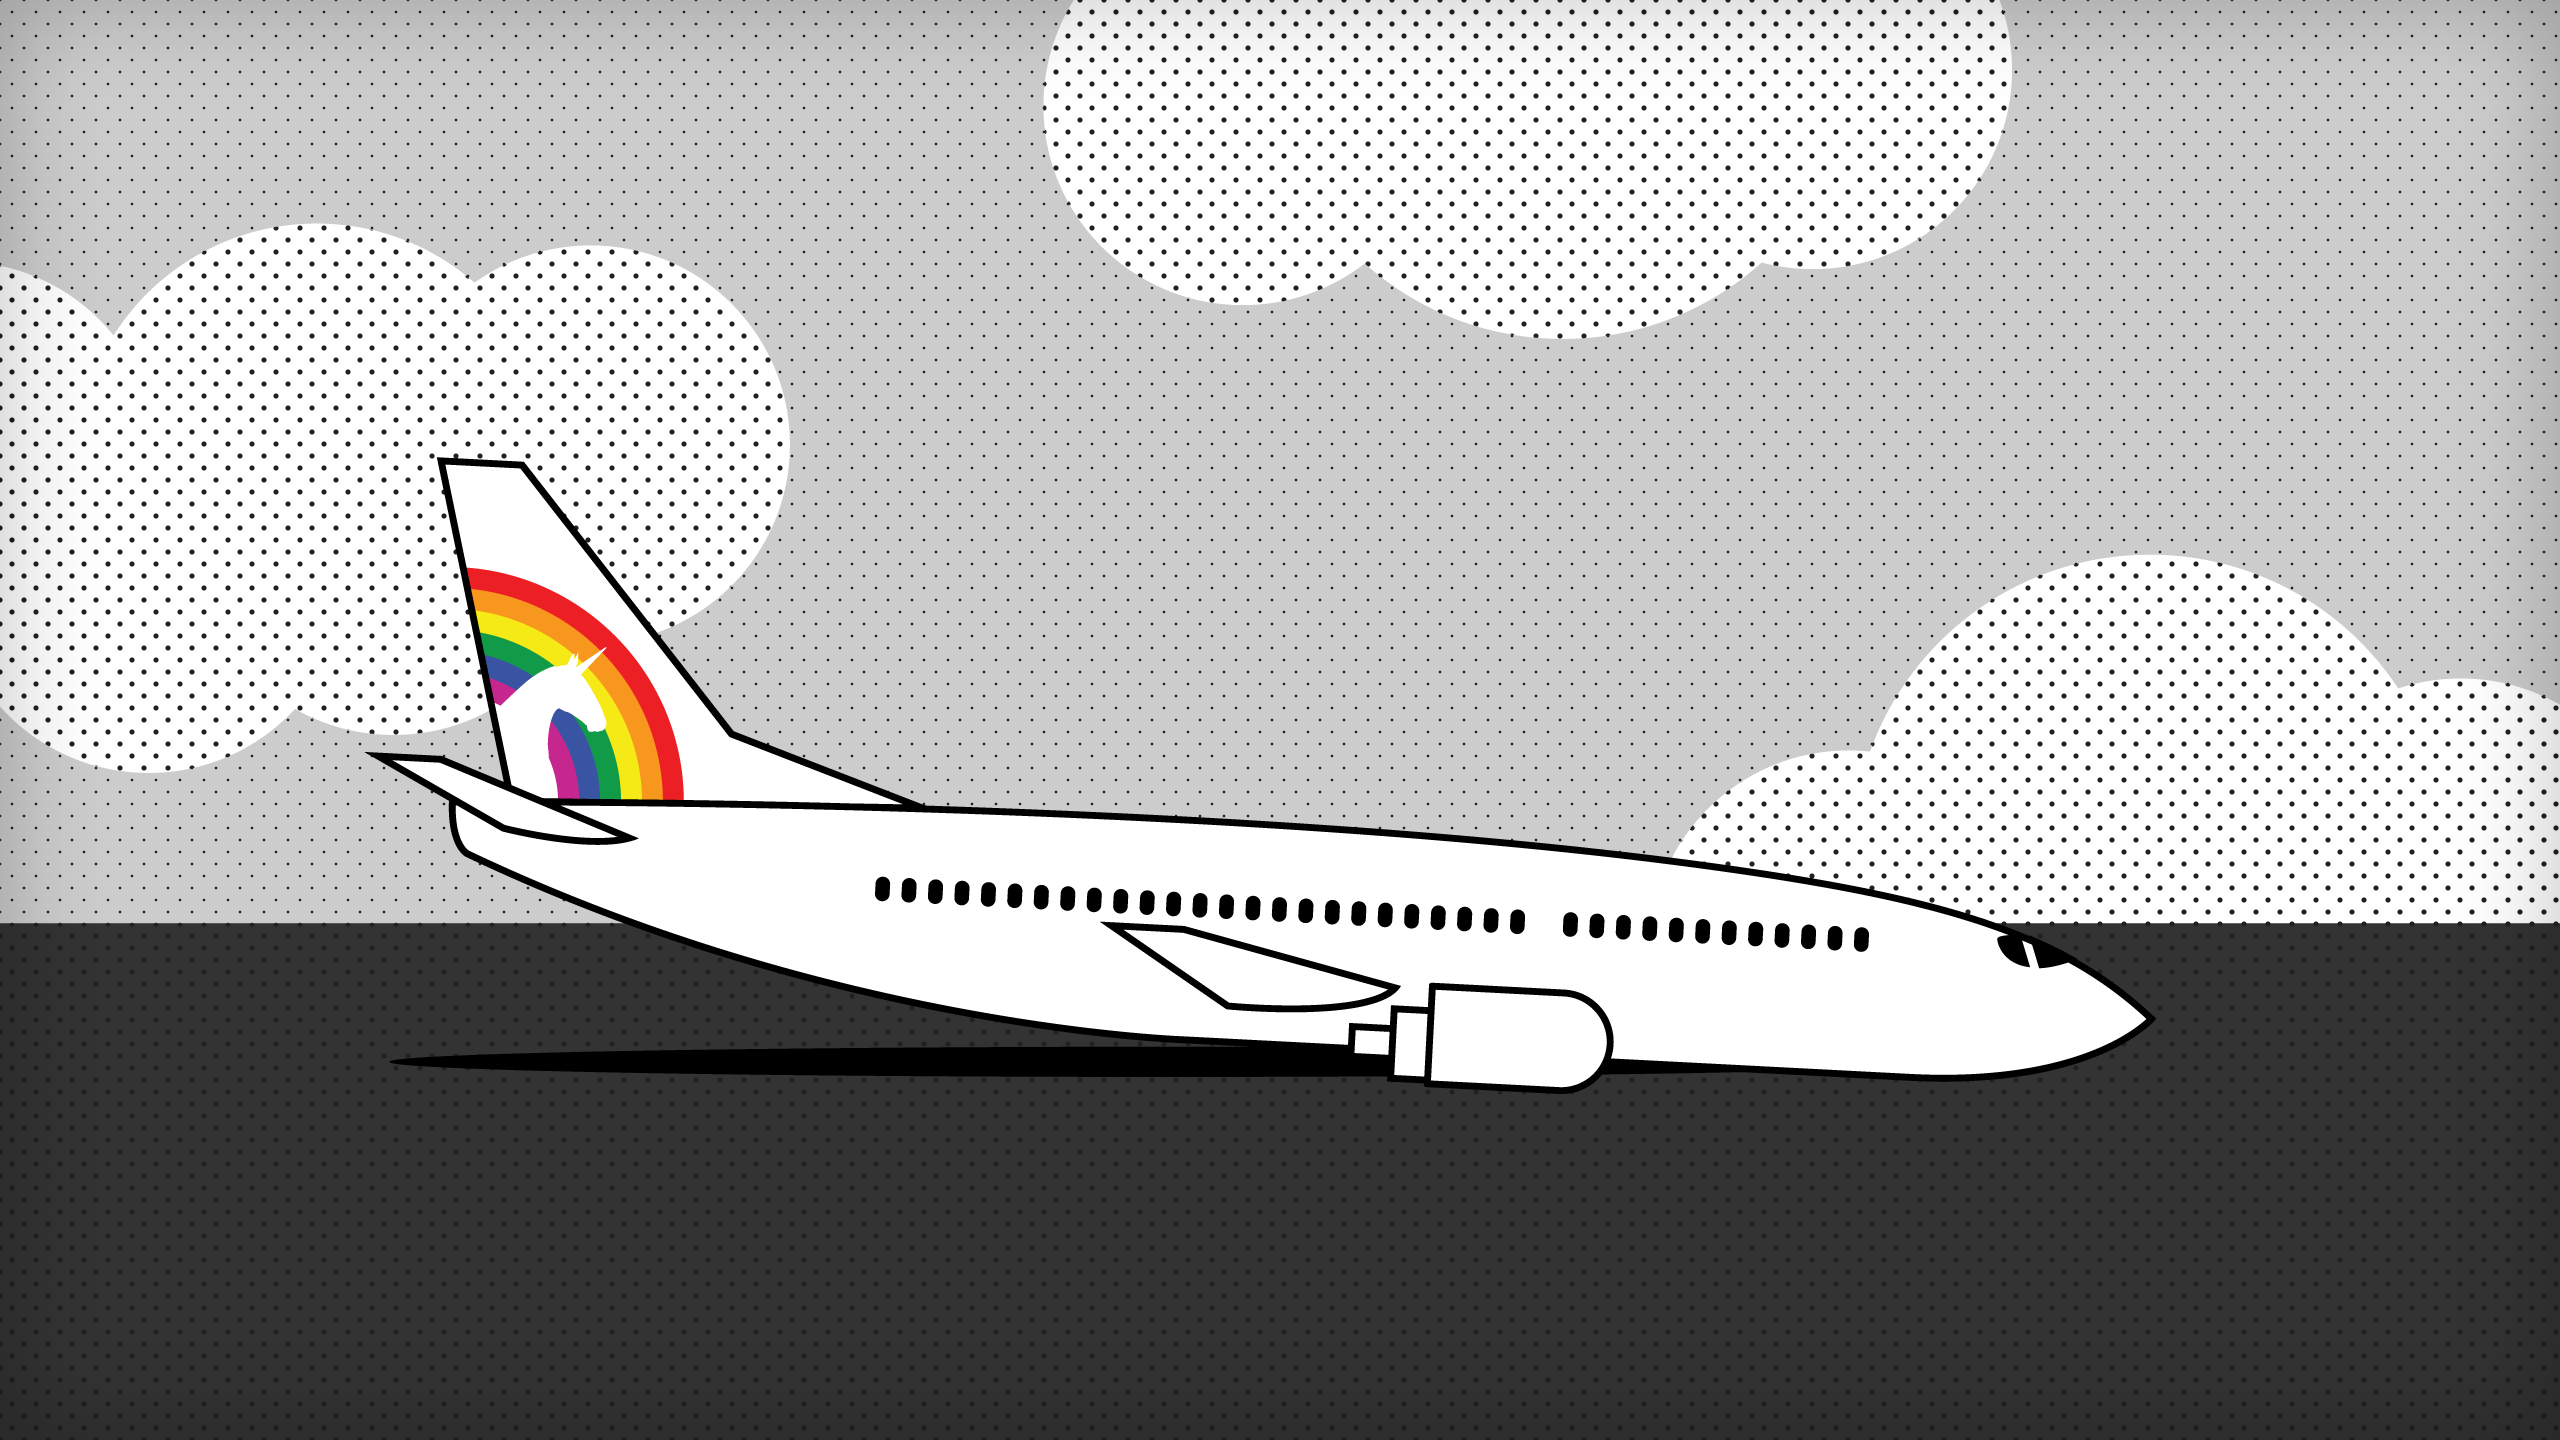 Une illustration d'un avion à réaction descendant avec un logo de licorne sur la queue